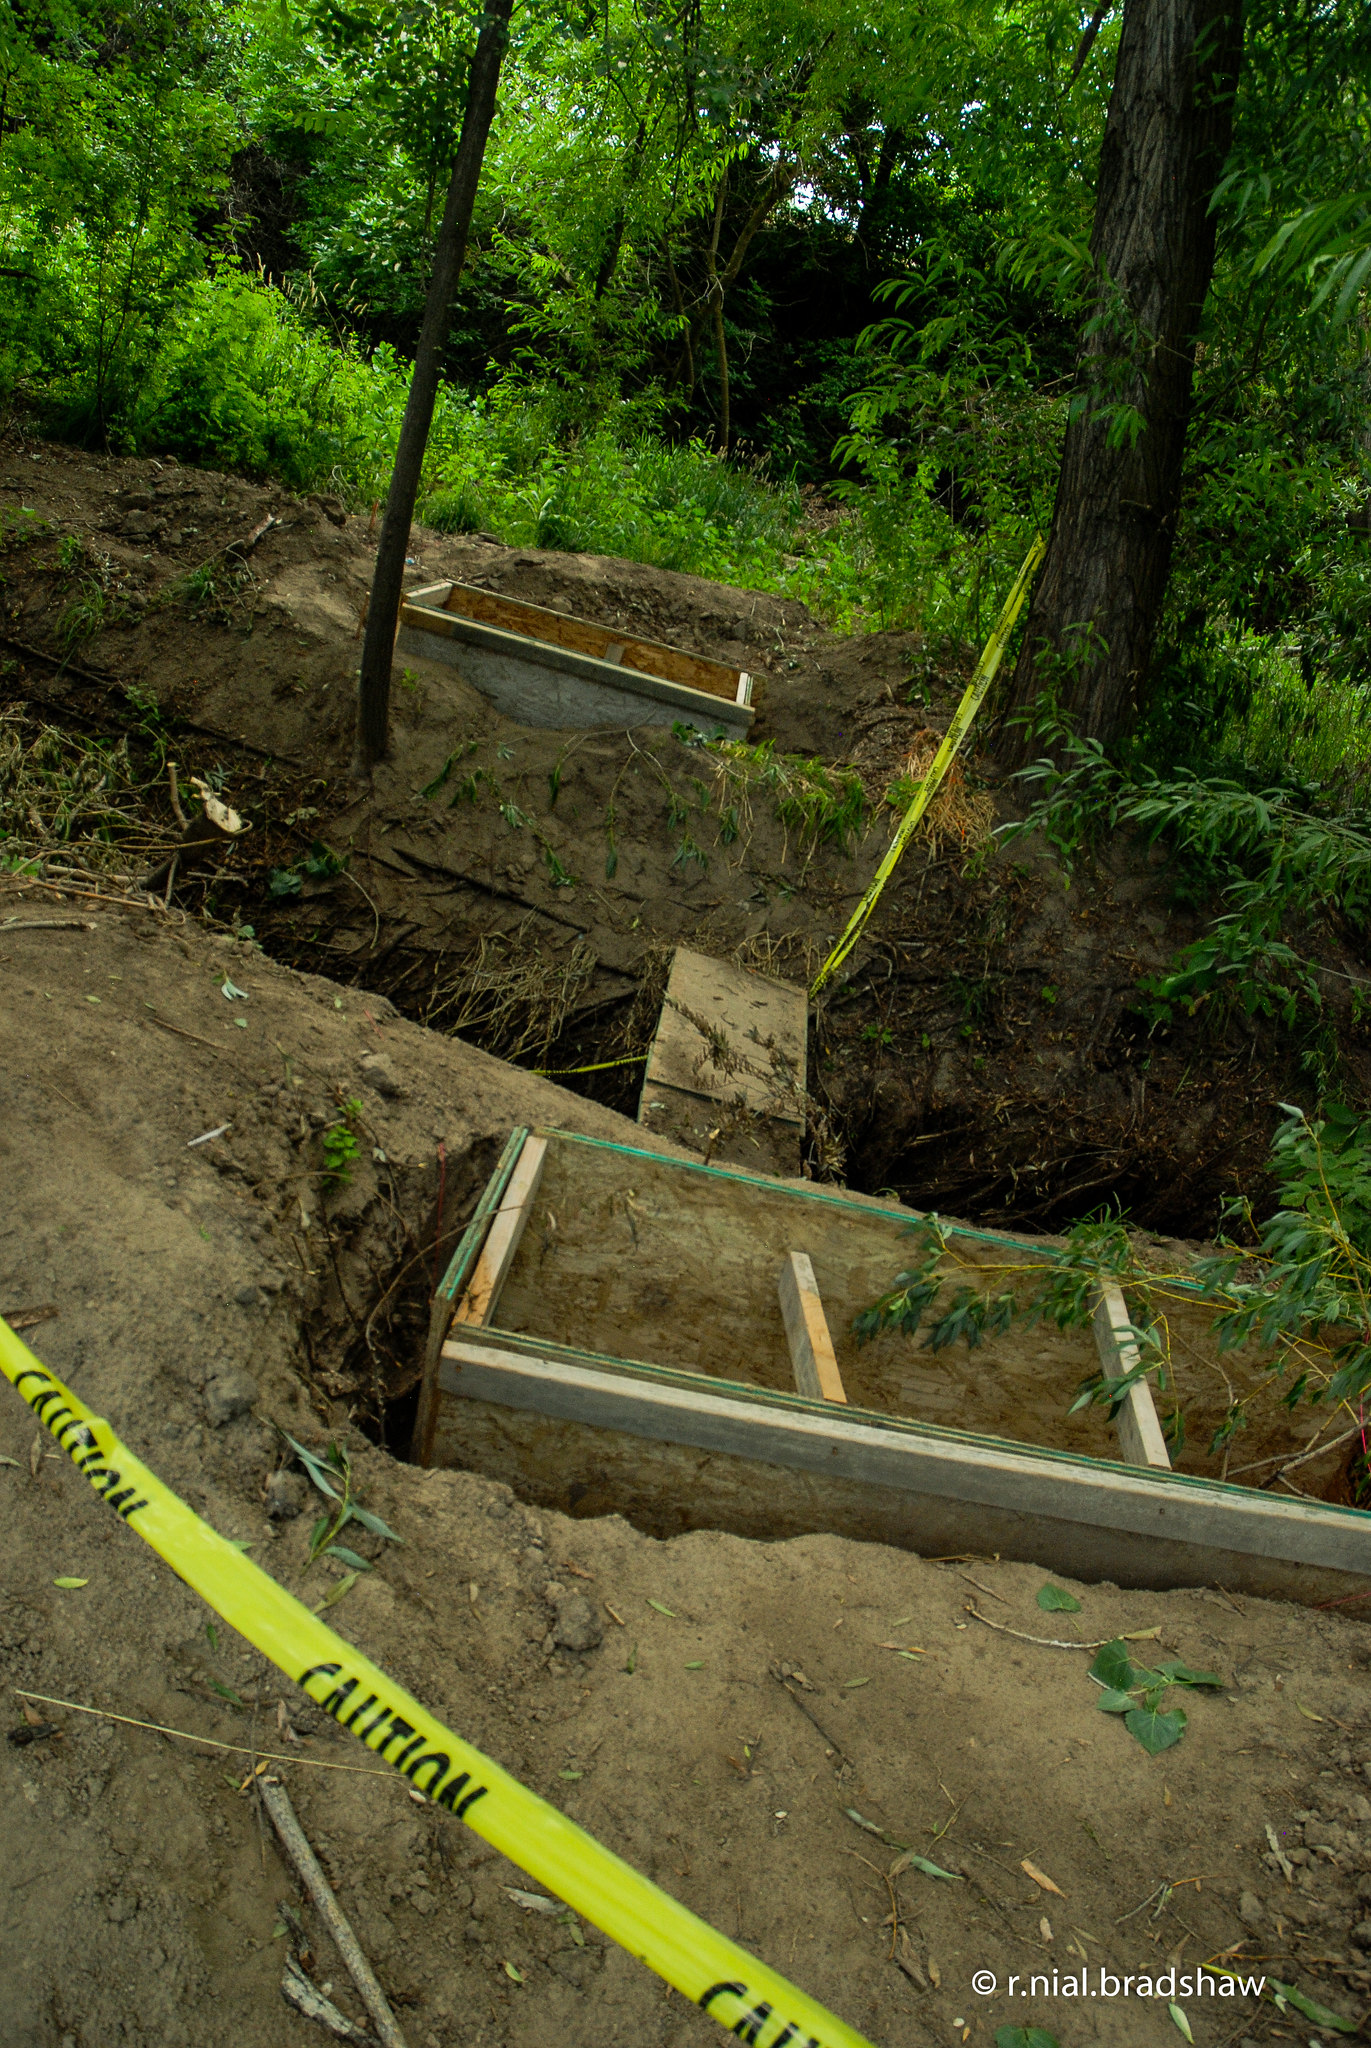 A crime scene of a dug up grave | Source: Flickr.com